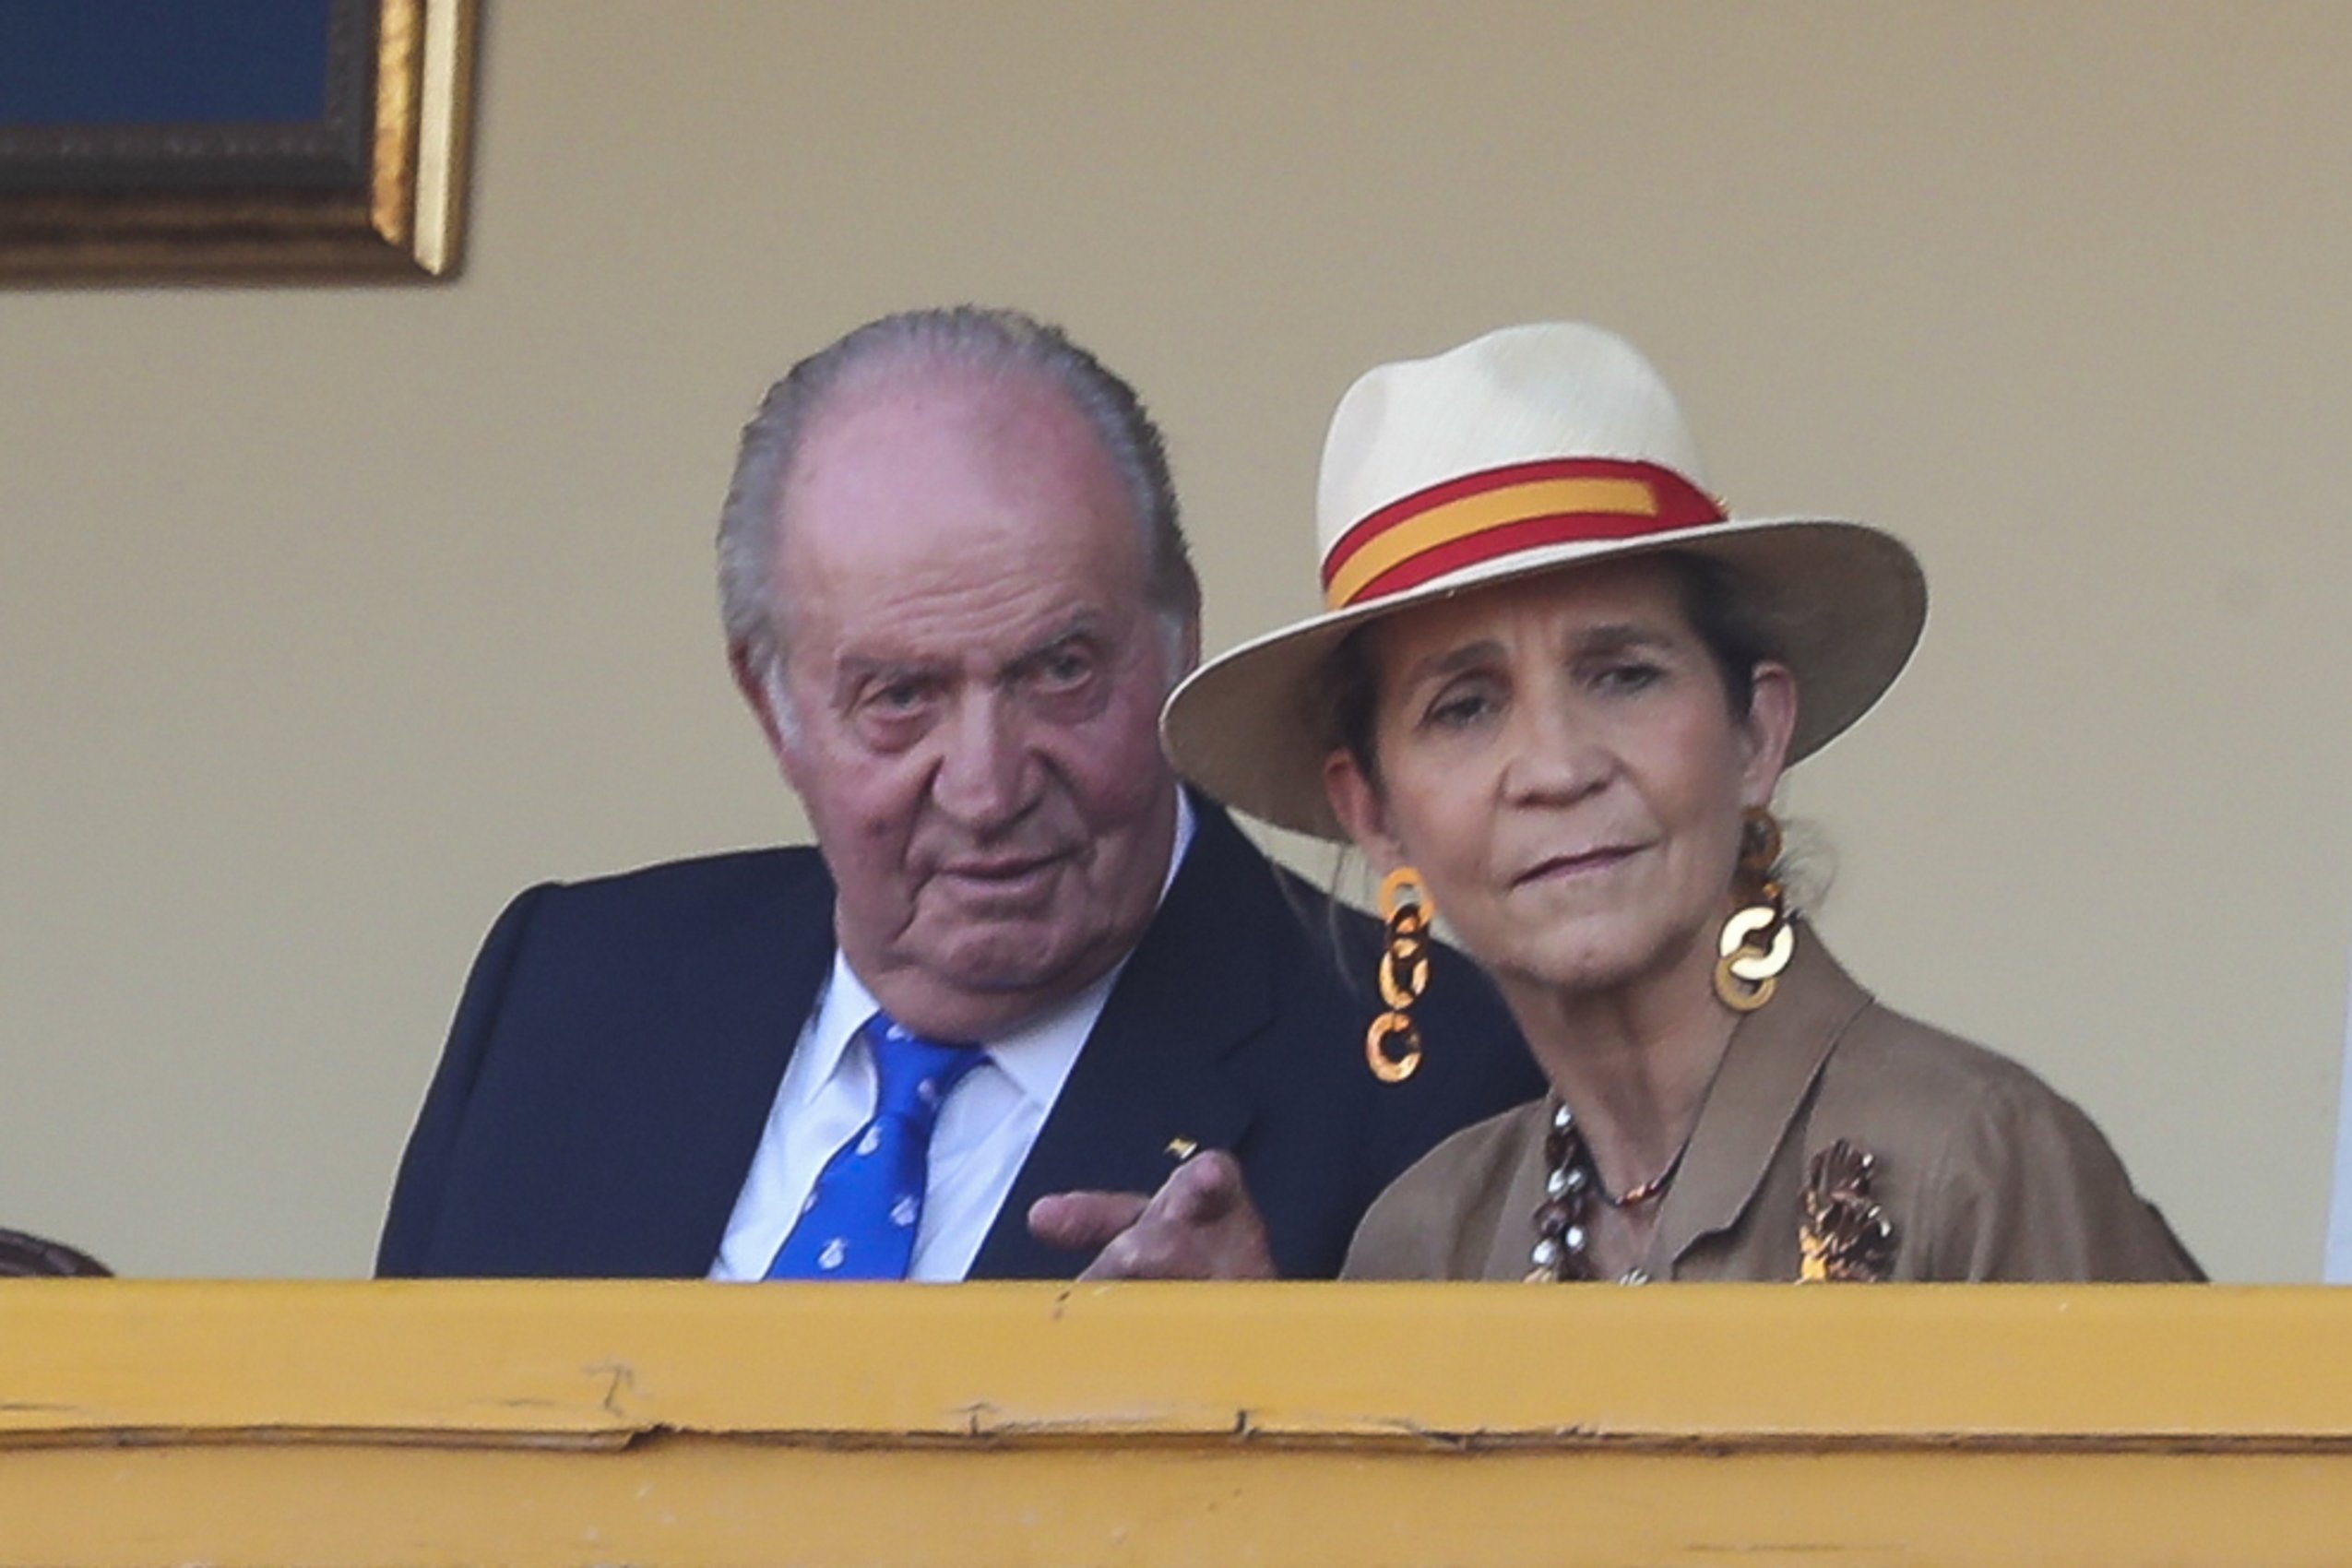 Familiares de Juan Carlos I también disfrutaron del dinero opaco, según la Fiscalía